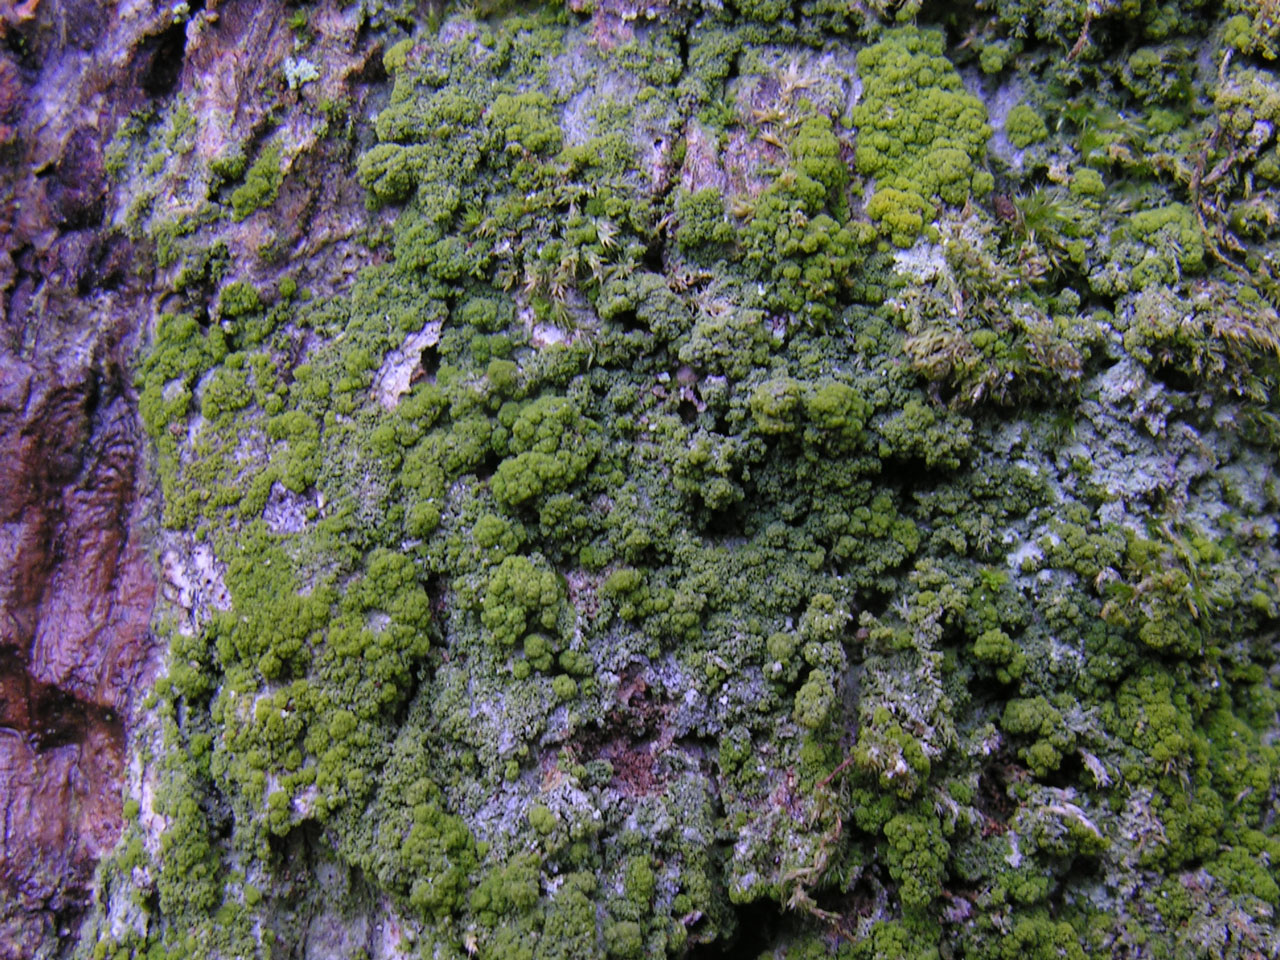 Coenogonium nimisii, James Hill, New Forest